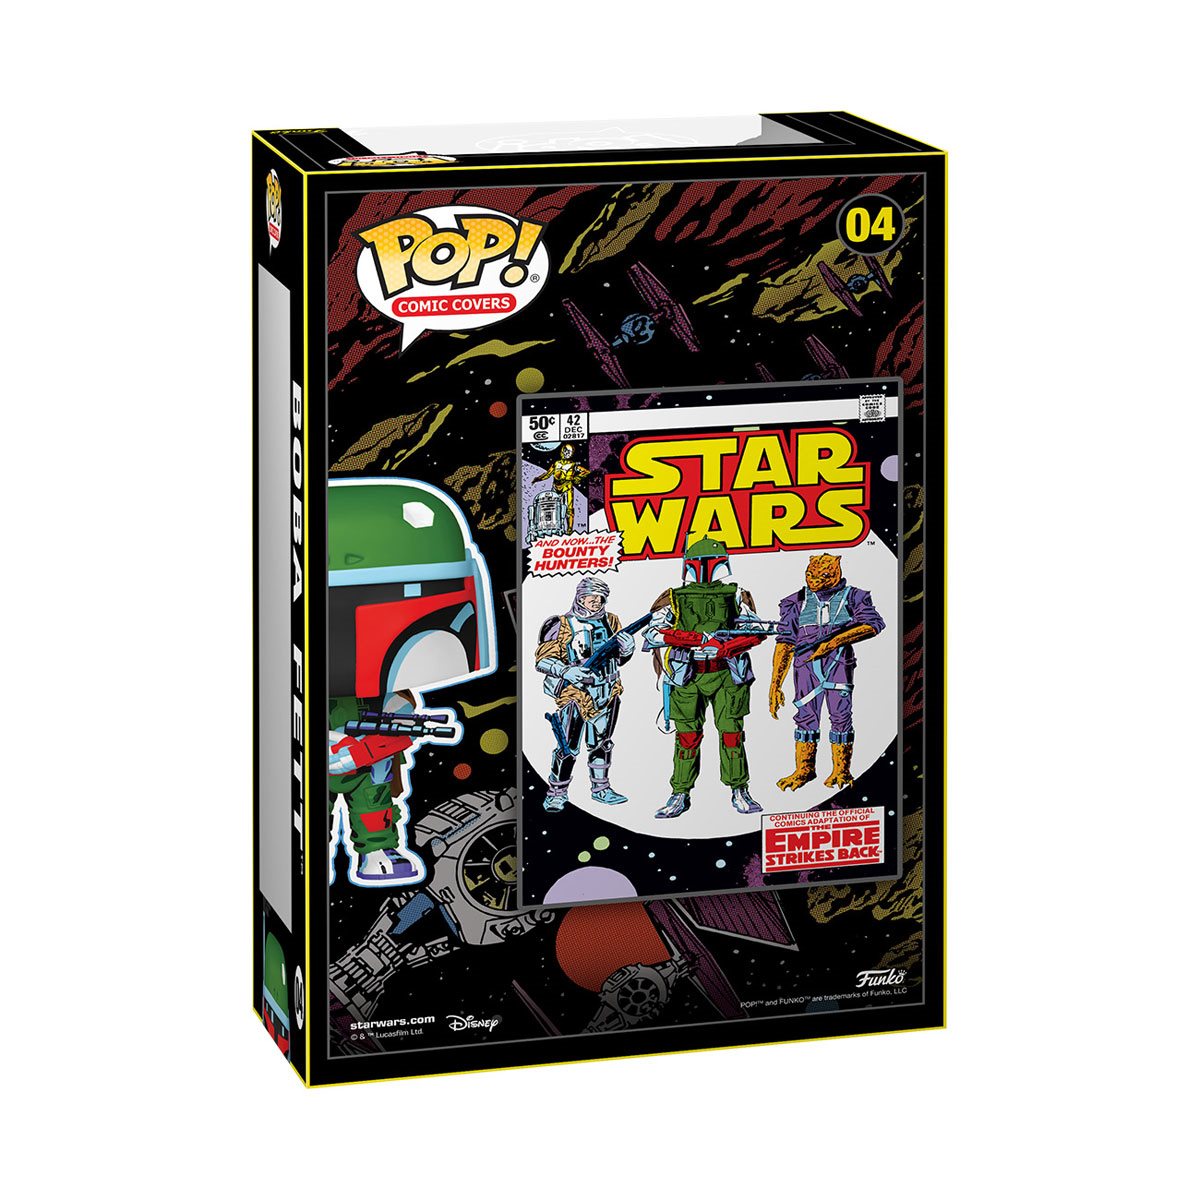 POP! Star Wars: The Empire Strikes Back - Boba Fett Comic Cover